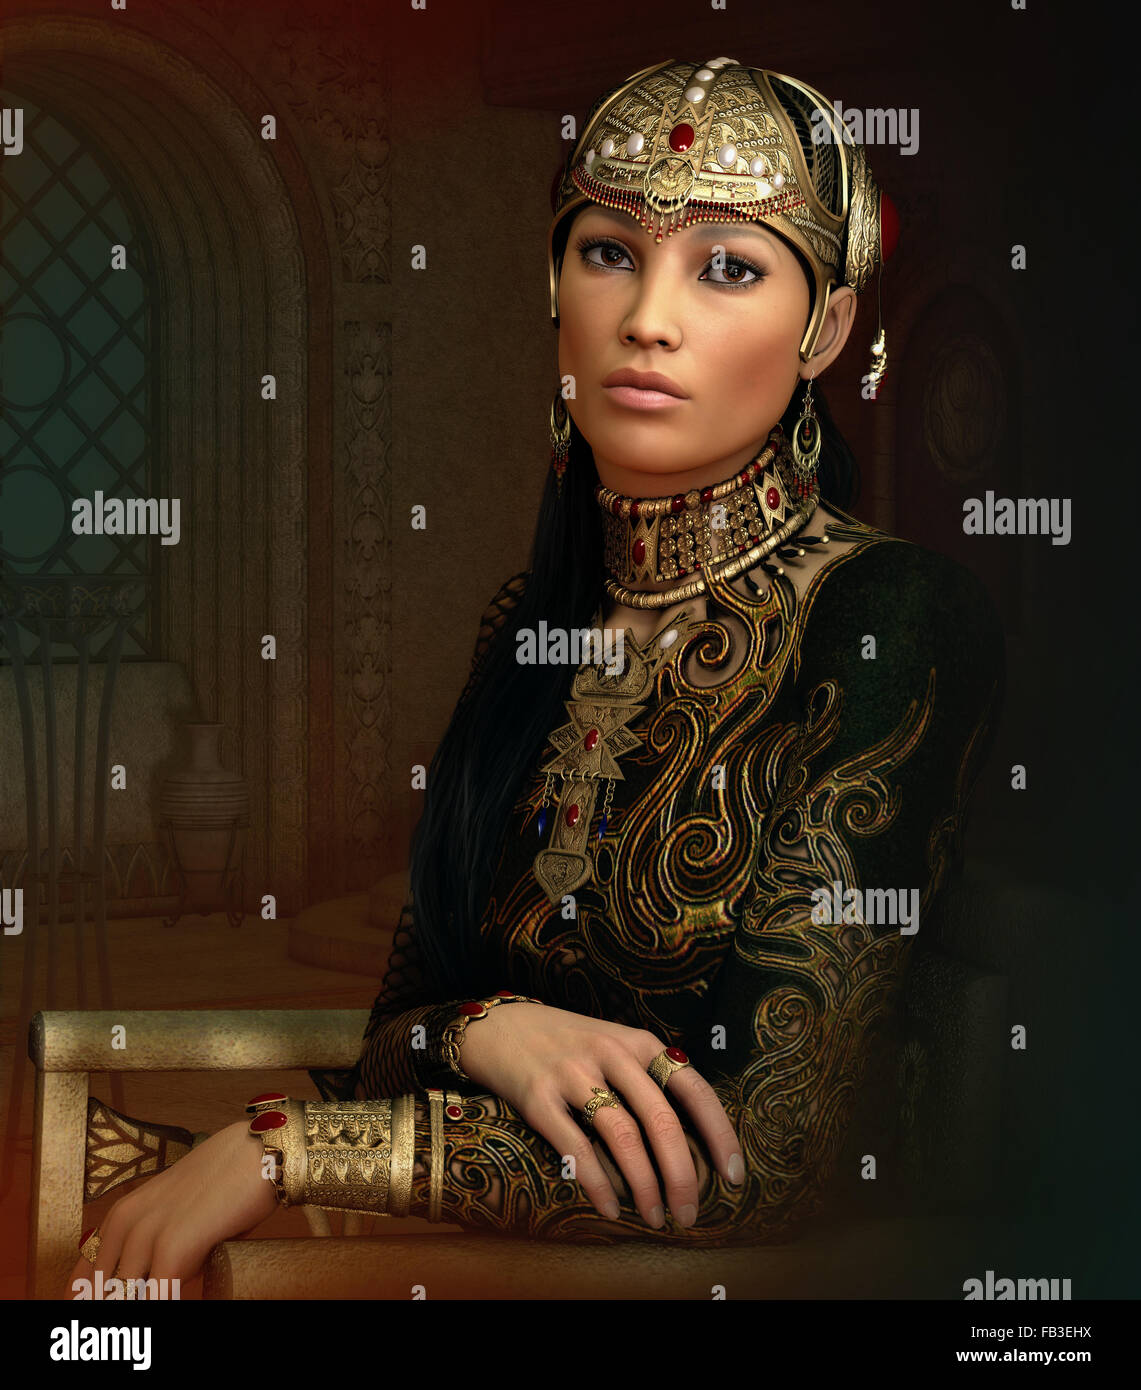 3D Computergrafik eines Fantasy-Porträt einer jungen Frau mit antiken orientalischen Schmuck und Kleidung Stockfoto